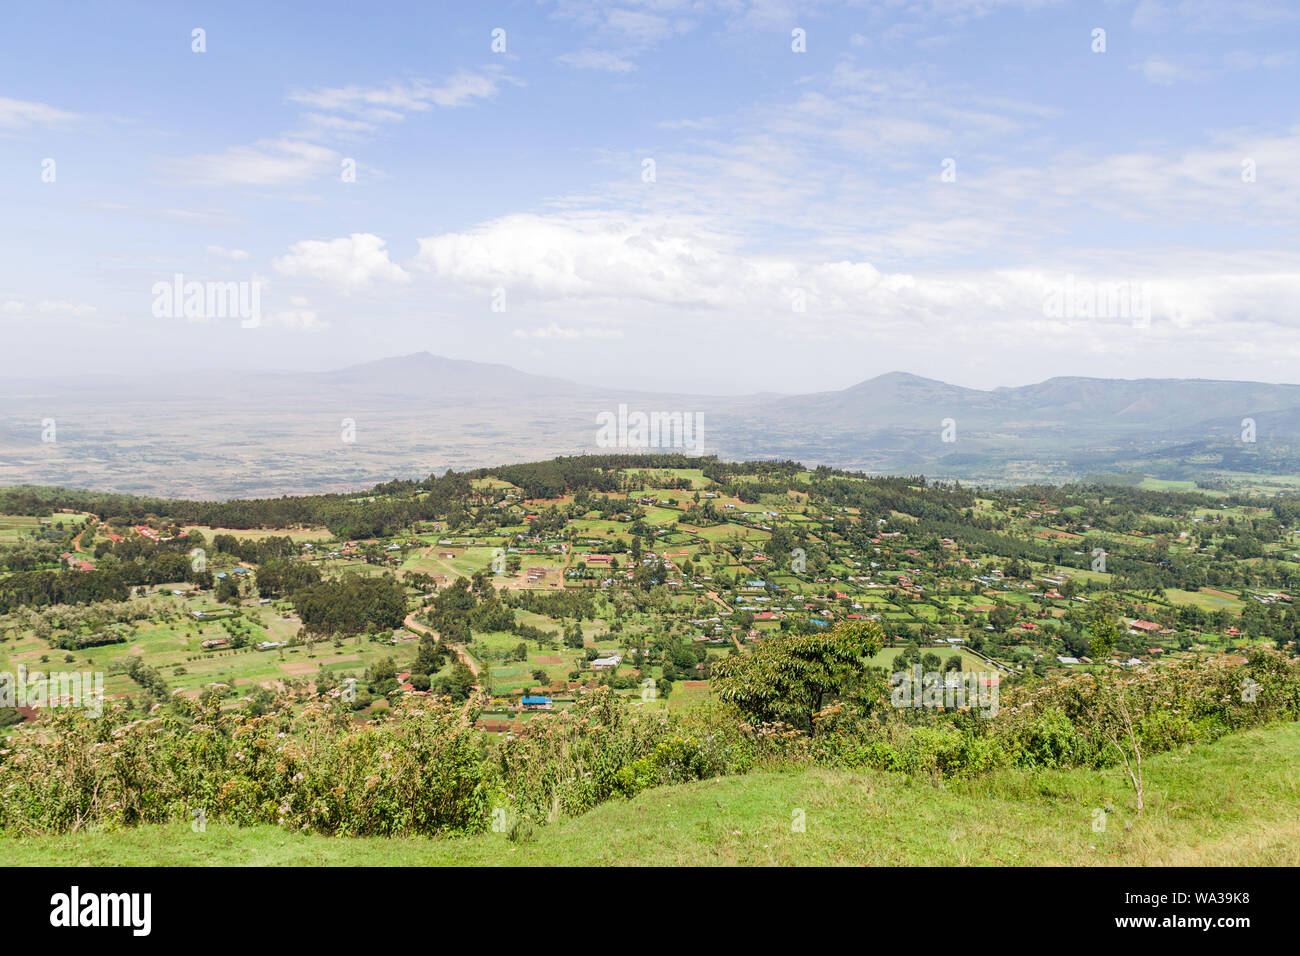 Vista elevada de hogares, granjas y edificios con en el fondo del valle del Rift, Kenia Foto de stock